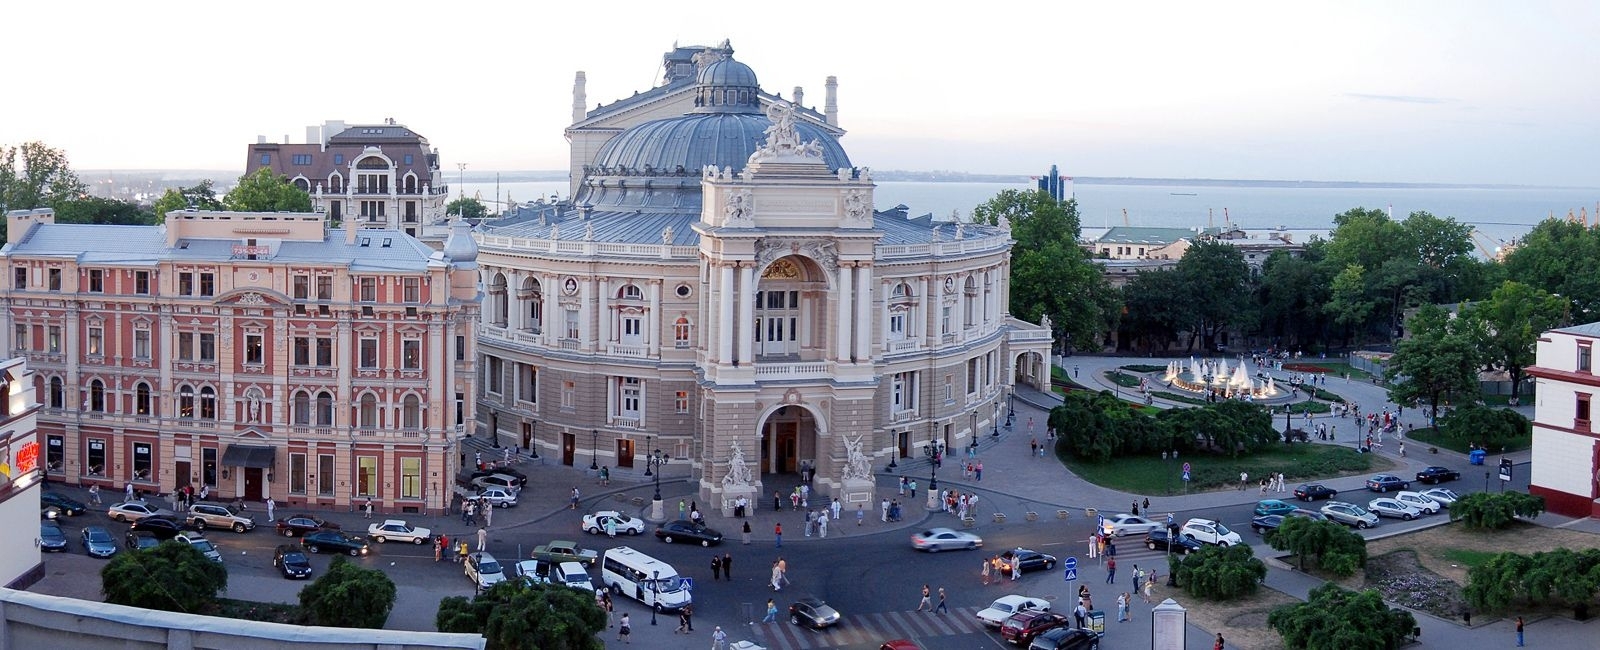 Одесские они фото слово итальянского происхождения. Одесса столица. Одесский оперный театр стиль архитектуры. Одесса виды города. Одесса город сейчас.